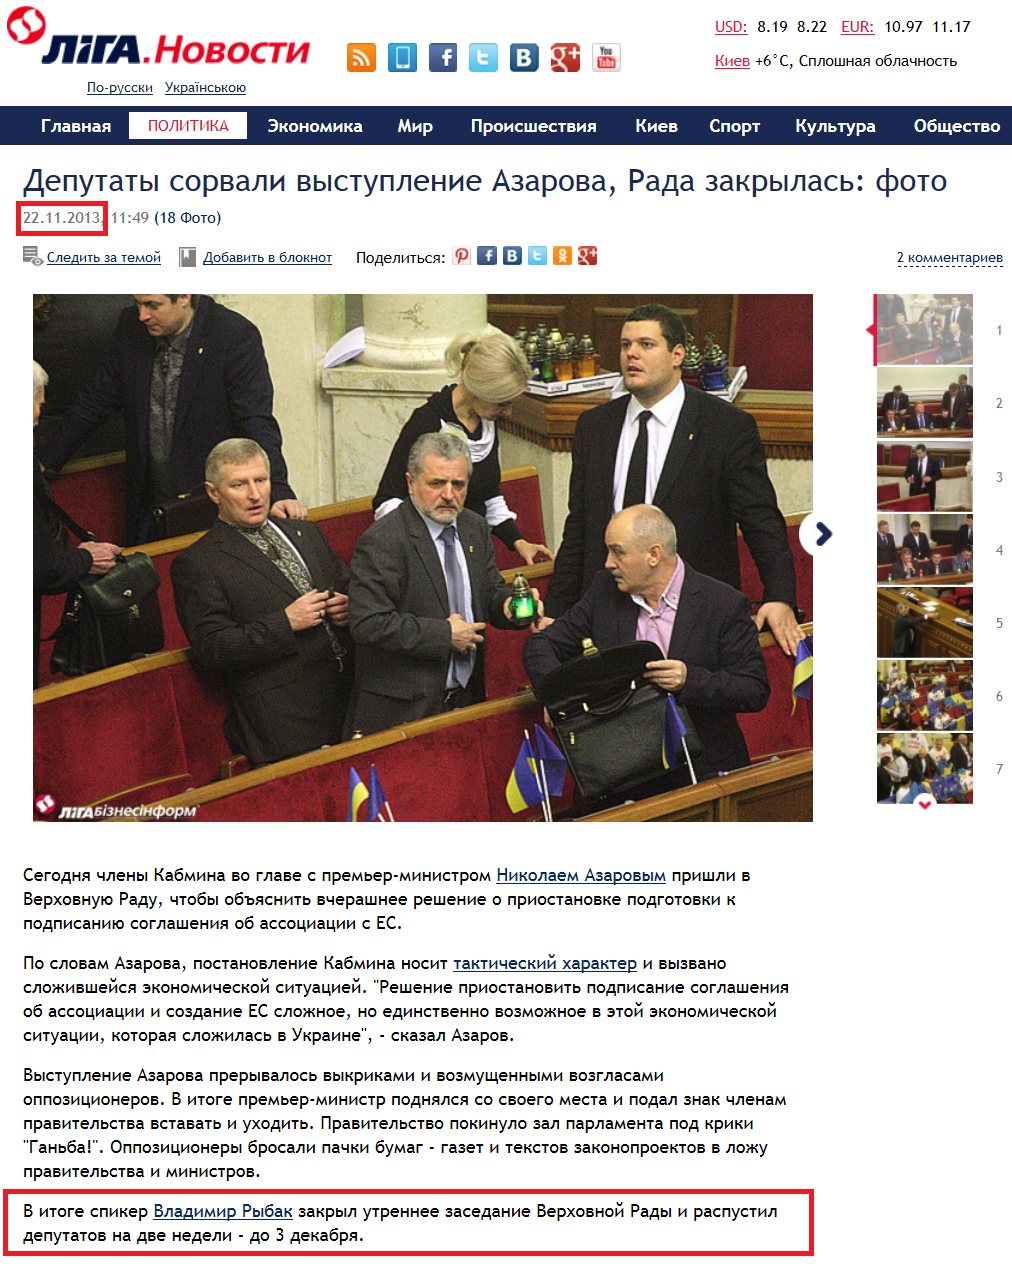 http://news.liga.net/photo/politics/927825-deputaty_sorvali_vystuplenie_azarova_rada_zakrylas_foto.htm#1